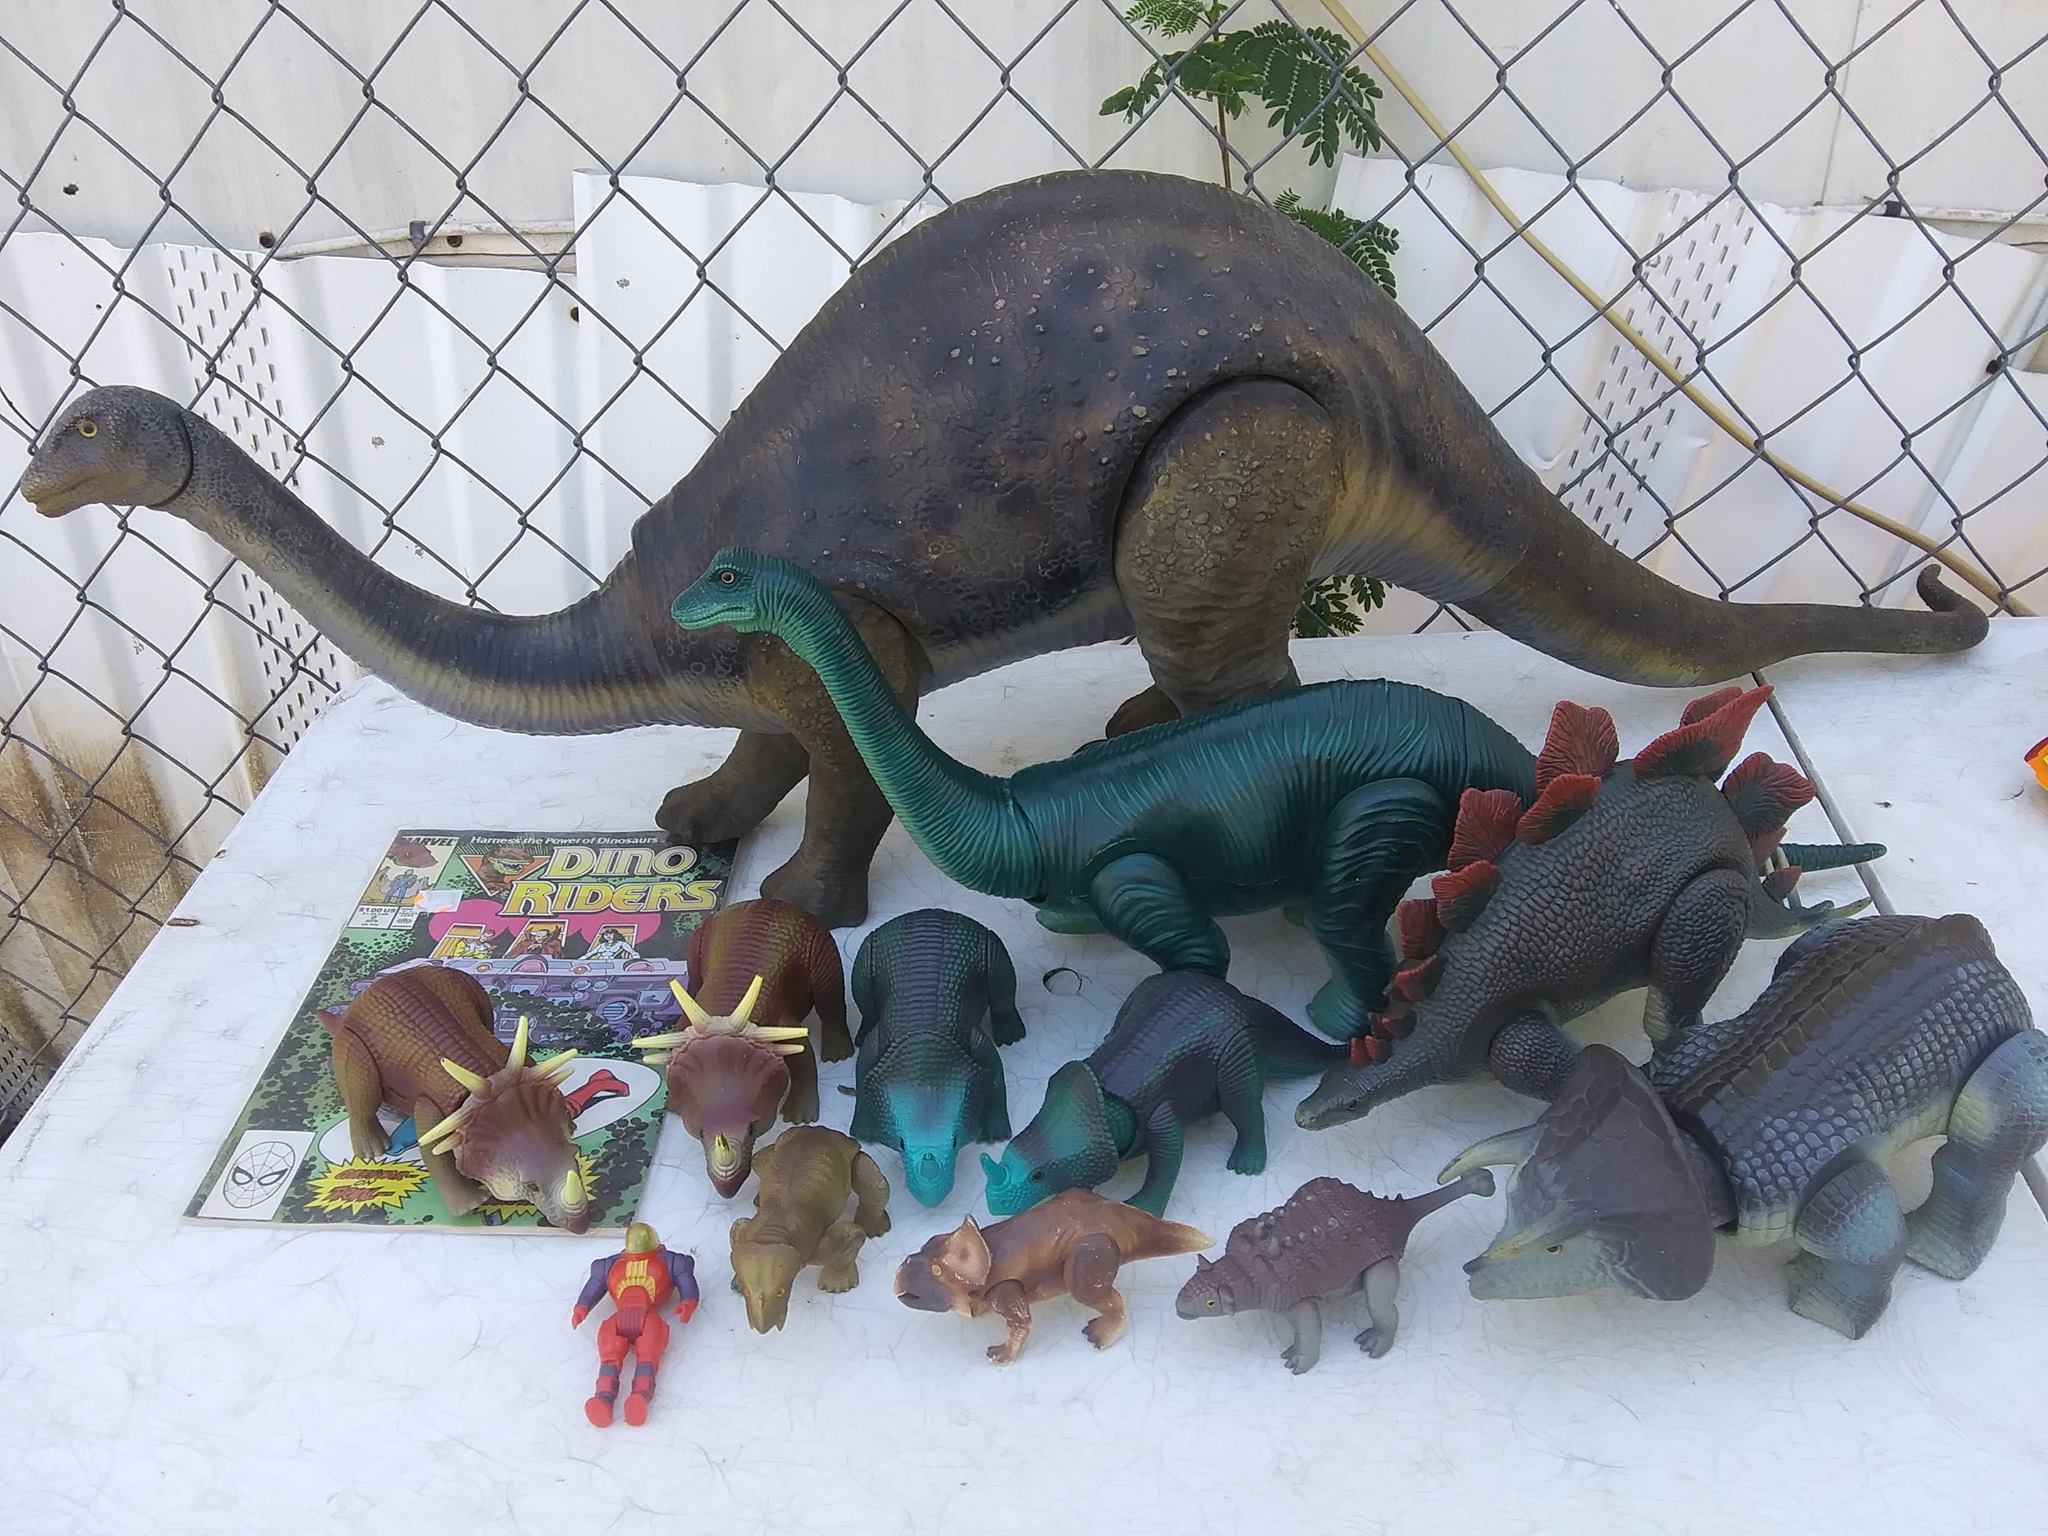 Dinosaurs were a craze